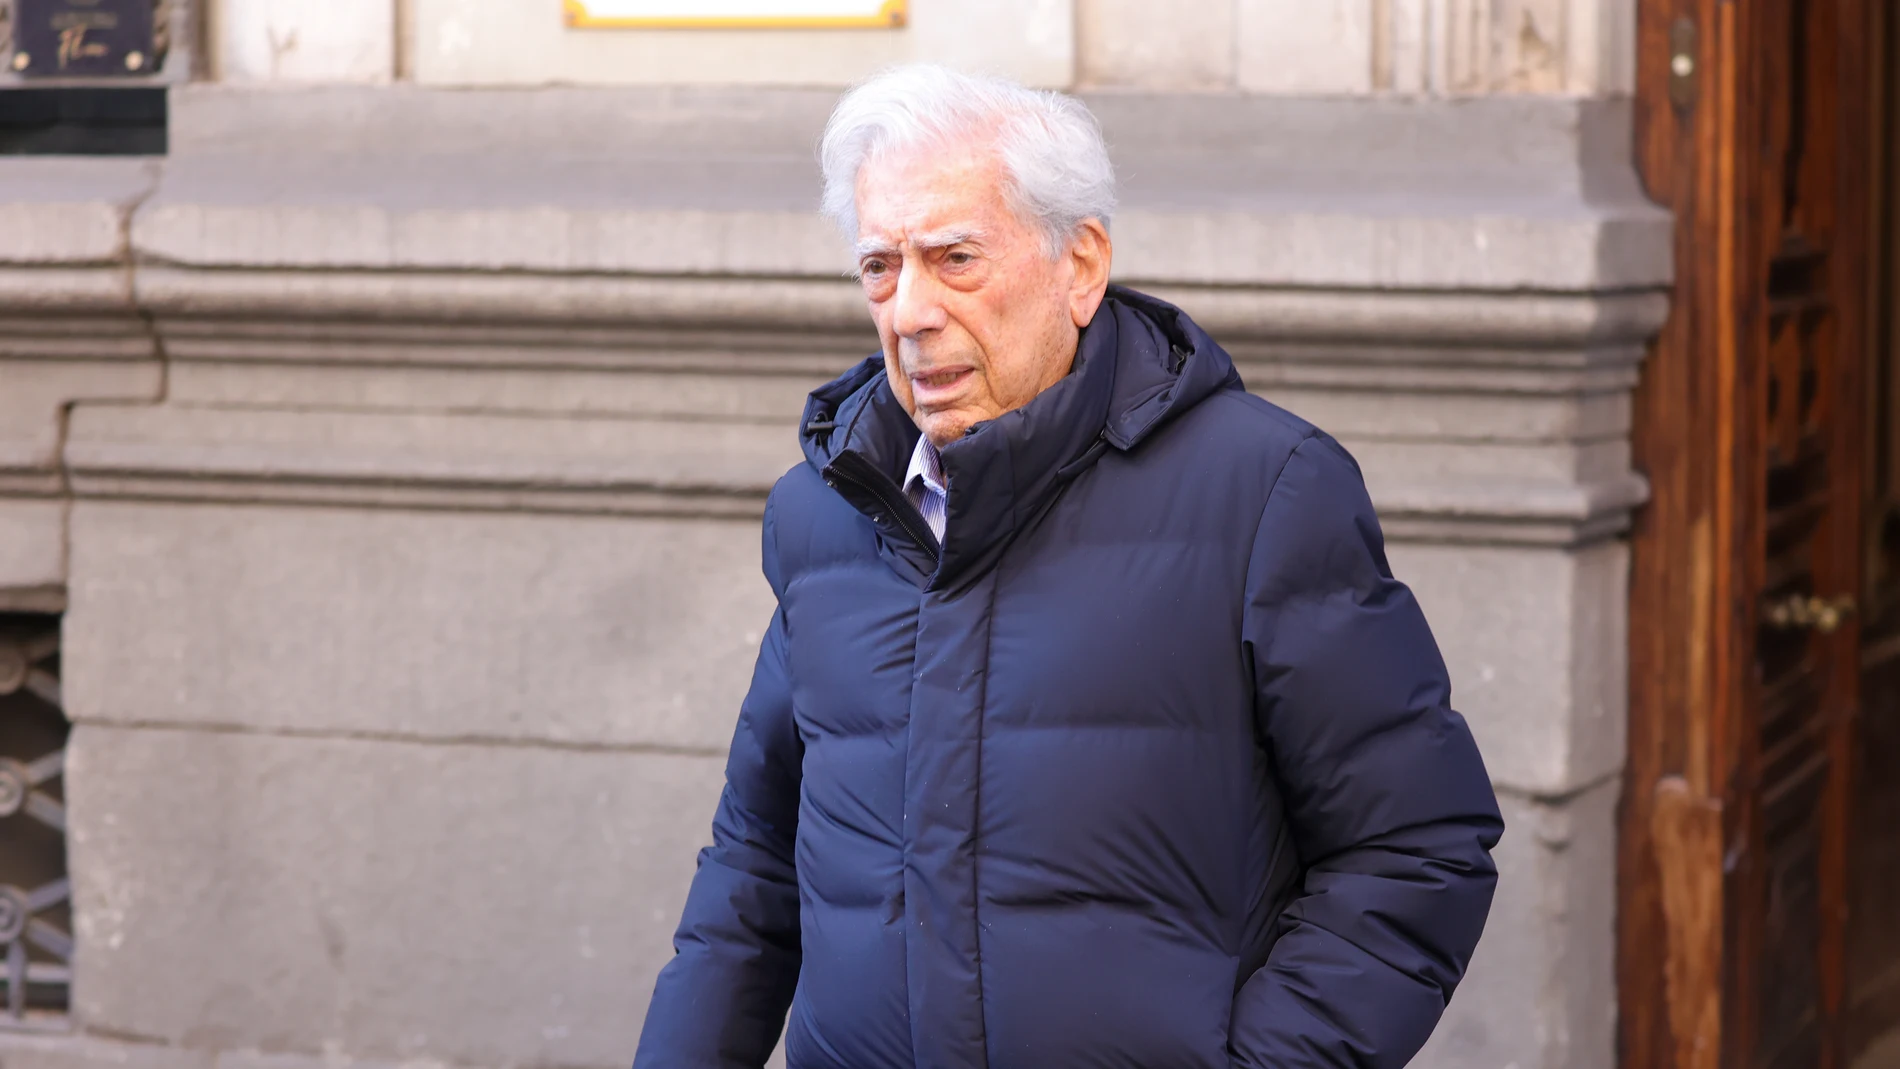 Mario Vargas Llosa en Madrid